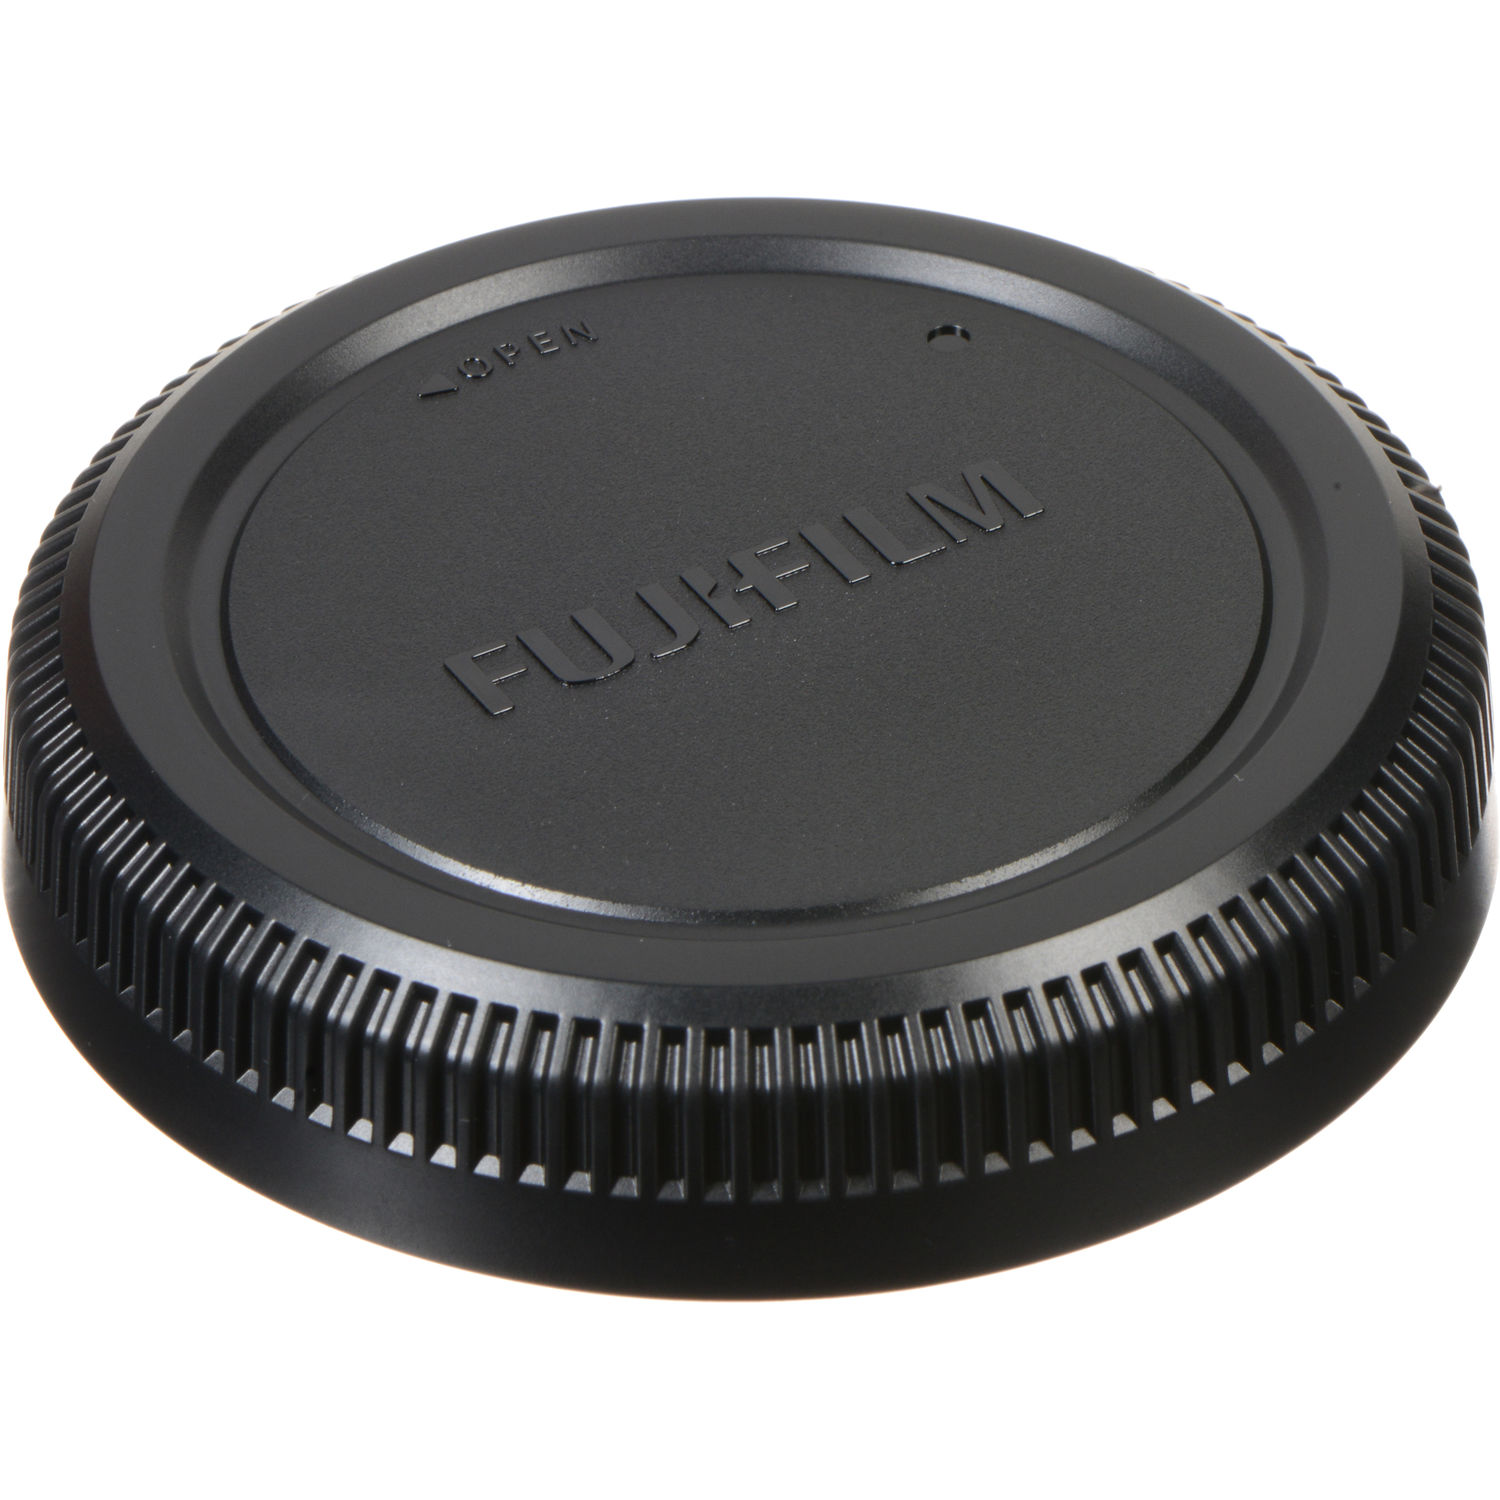 Fujifilm Rear Lens Cap RLCP-002 for GFX